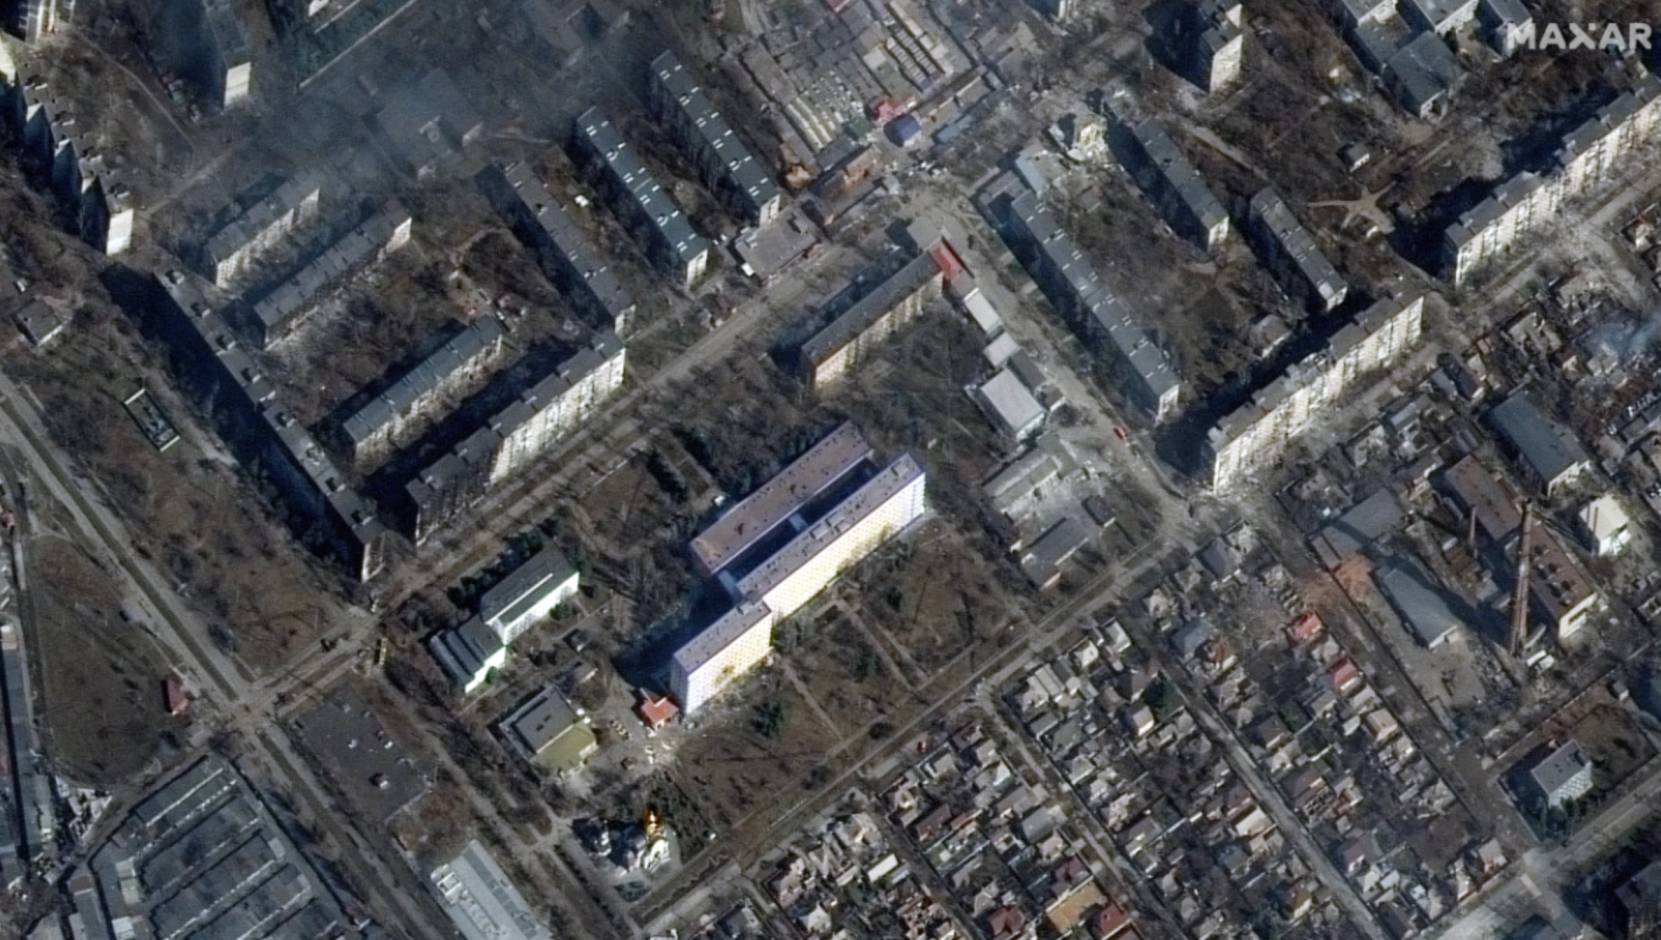 Cette image satellite prise le 14 mars 2022 montre un hôpital et des immeubles détruits lors de bombardements aériens russes à Marioupol, en Ukraine. (Technologies Maxar/AFP)